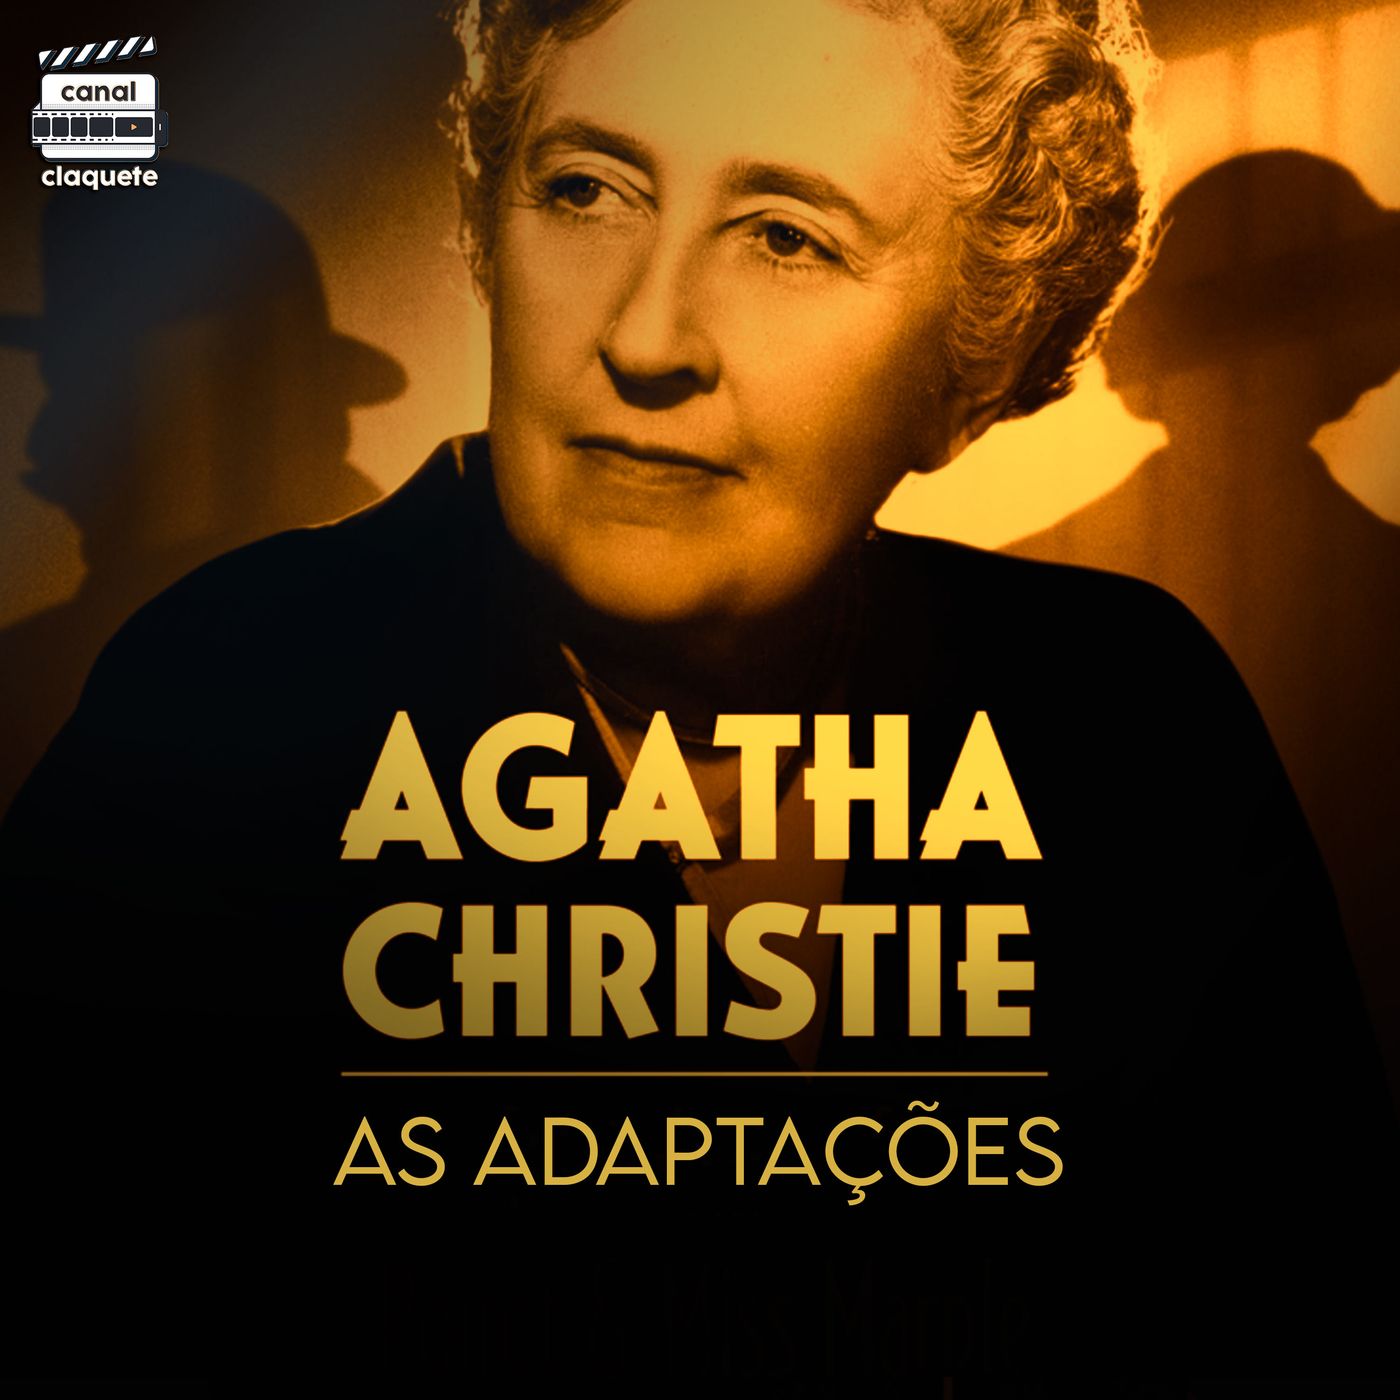 Adaptações da Agatha Christie | Clacast 110